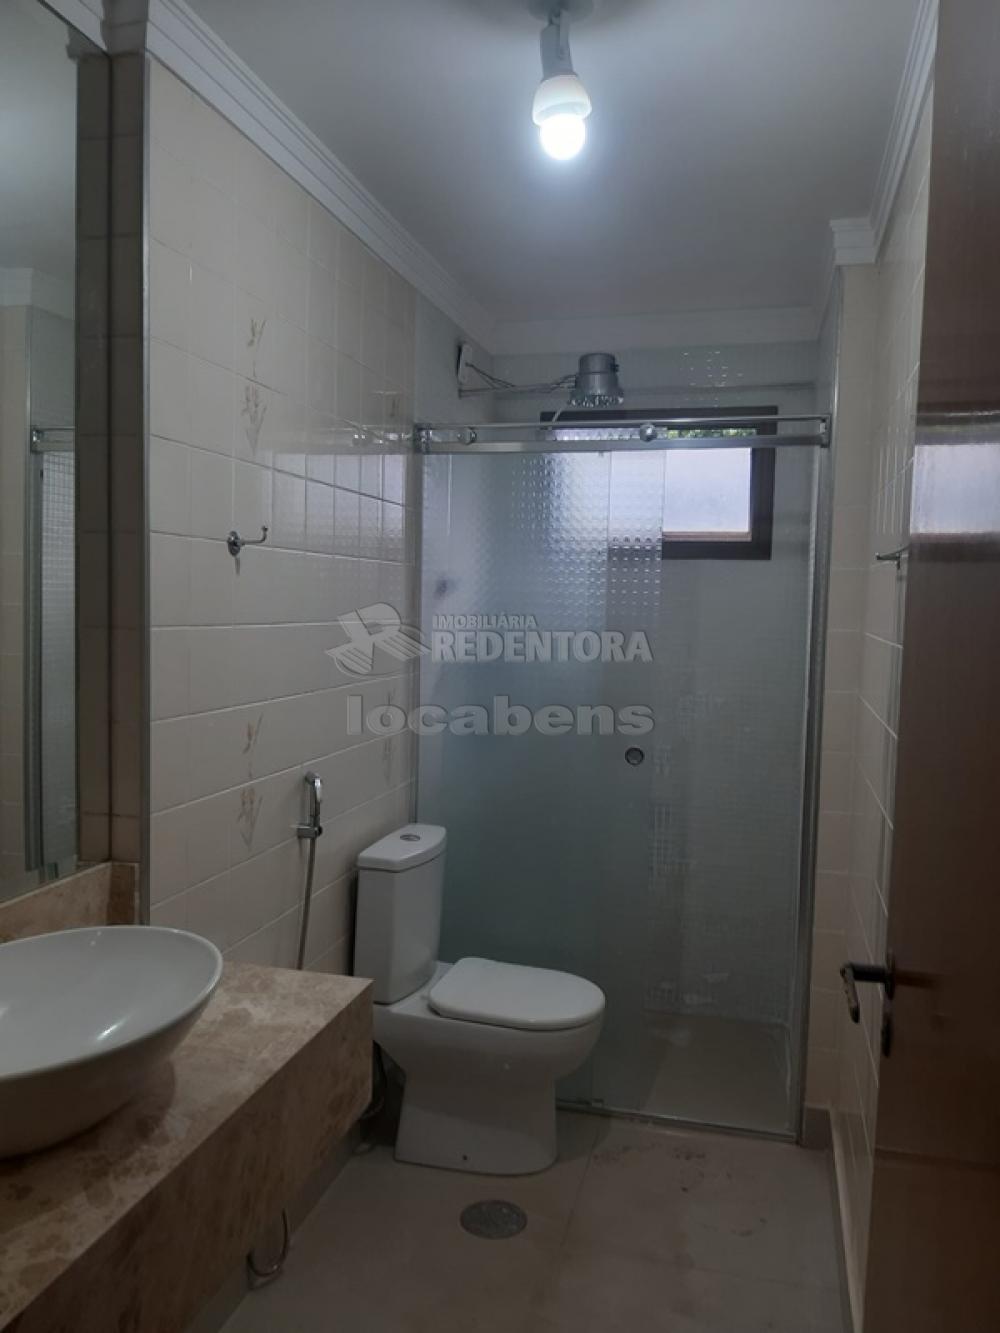 Comprar Apartamento / Padrão em São José do Rio Preto apenas R$ 380.000,00 - Foto 11